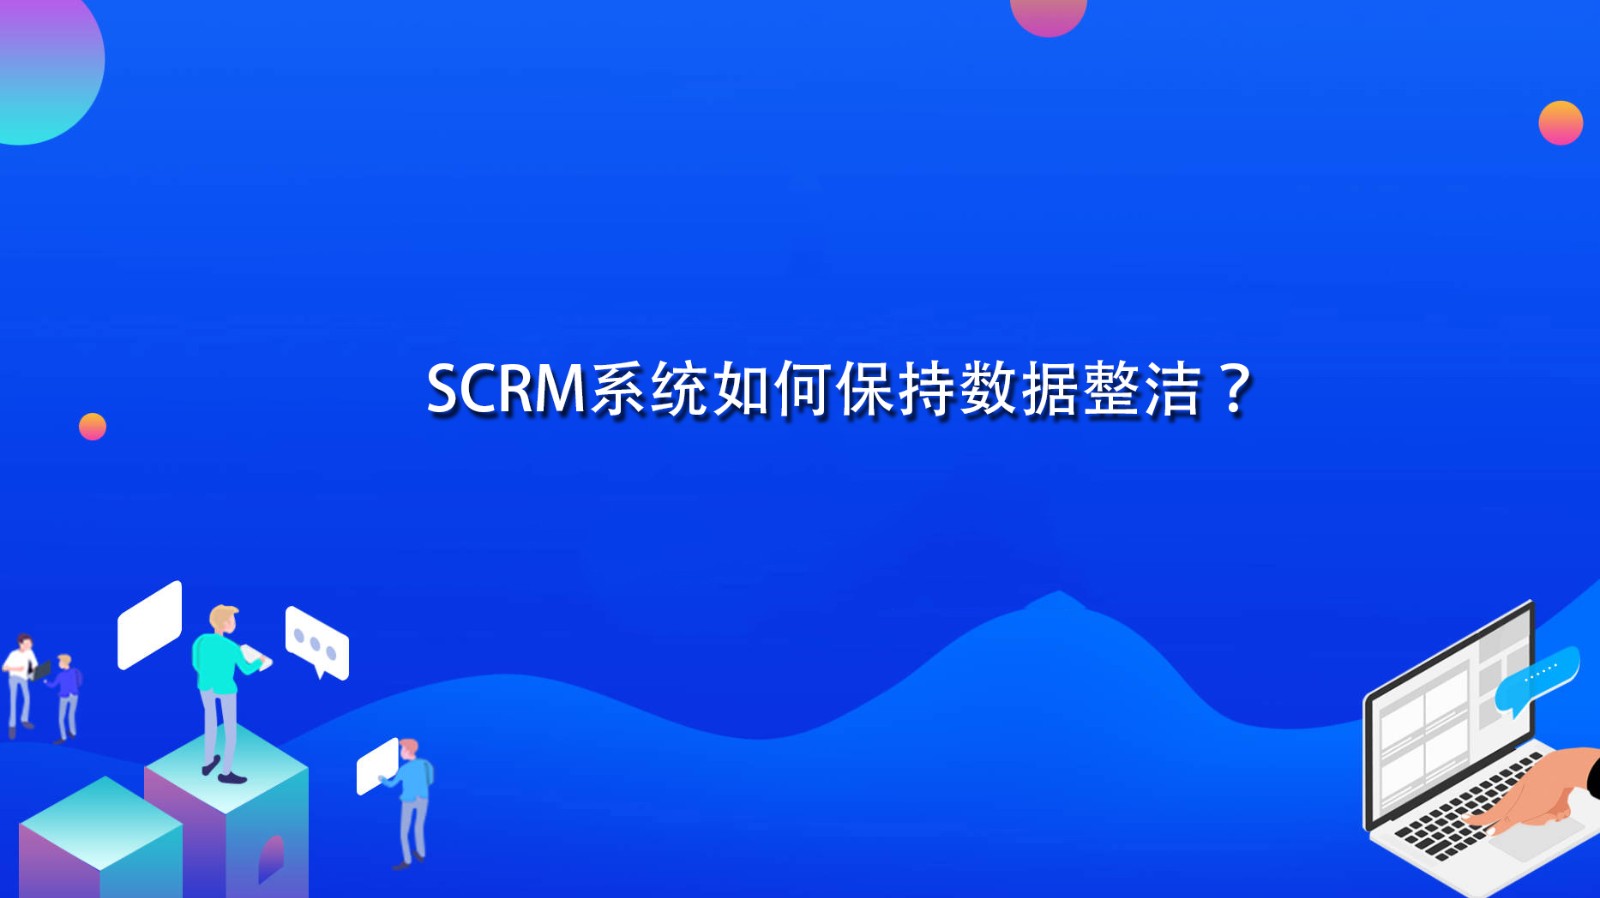 SCRM系统如何保持数据整洁？